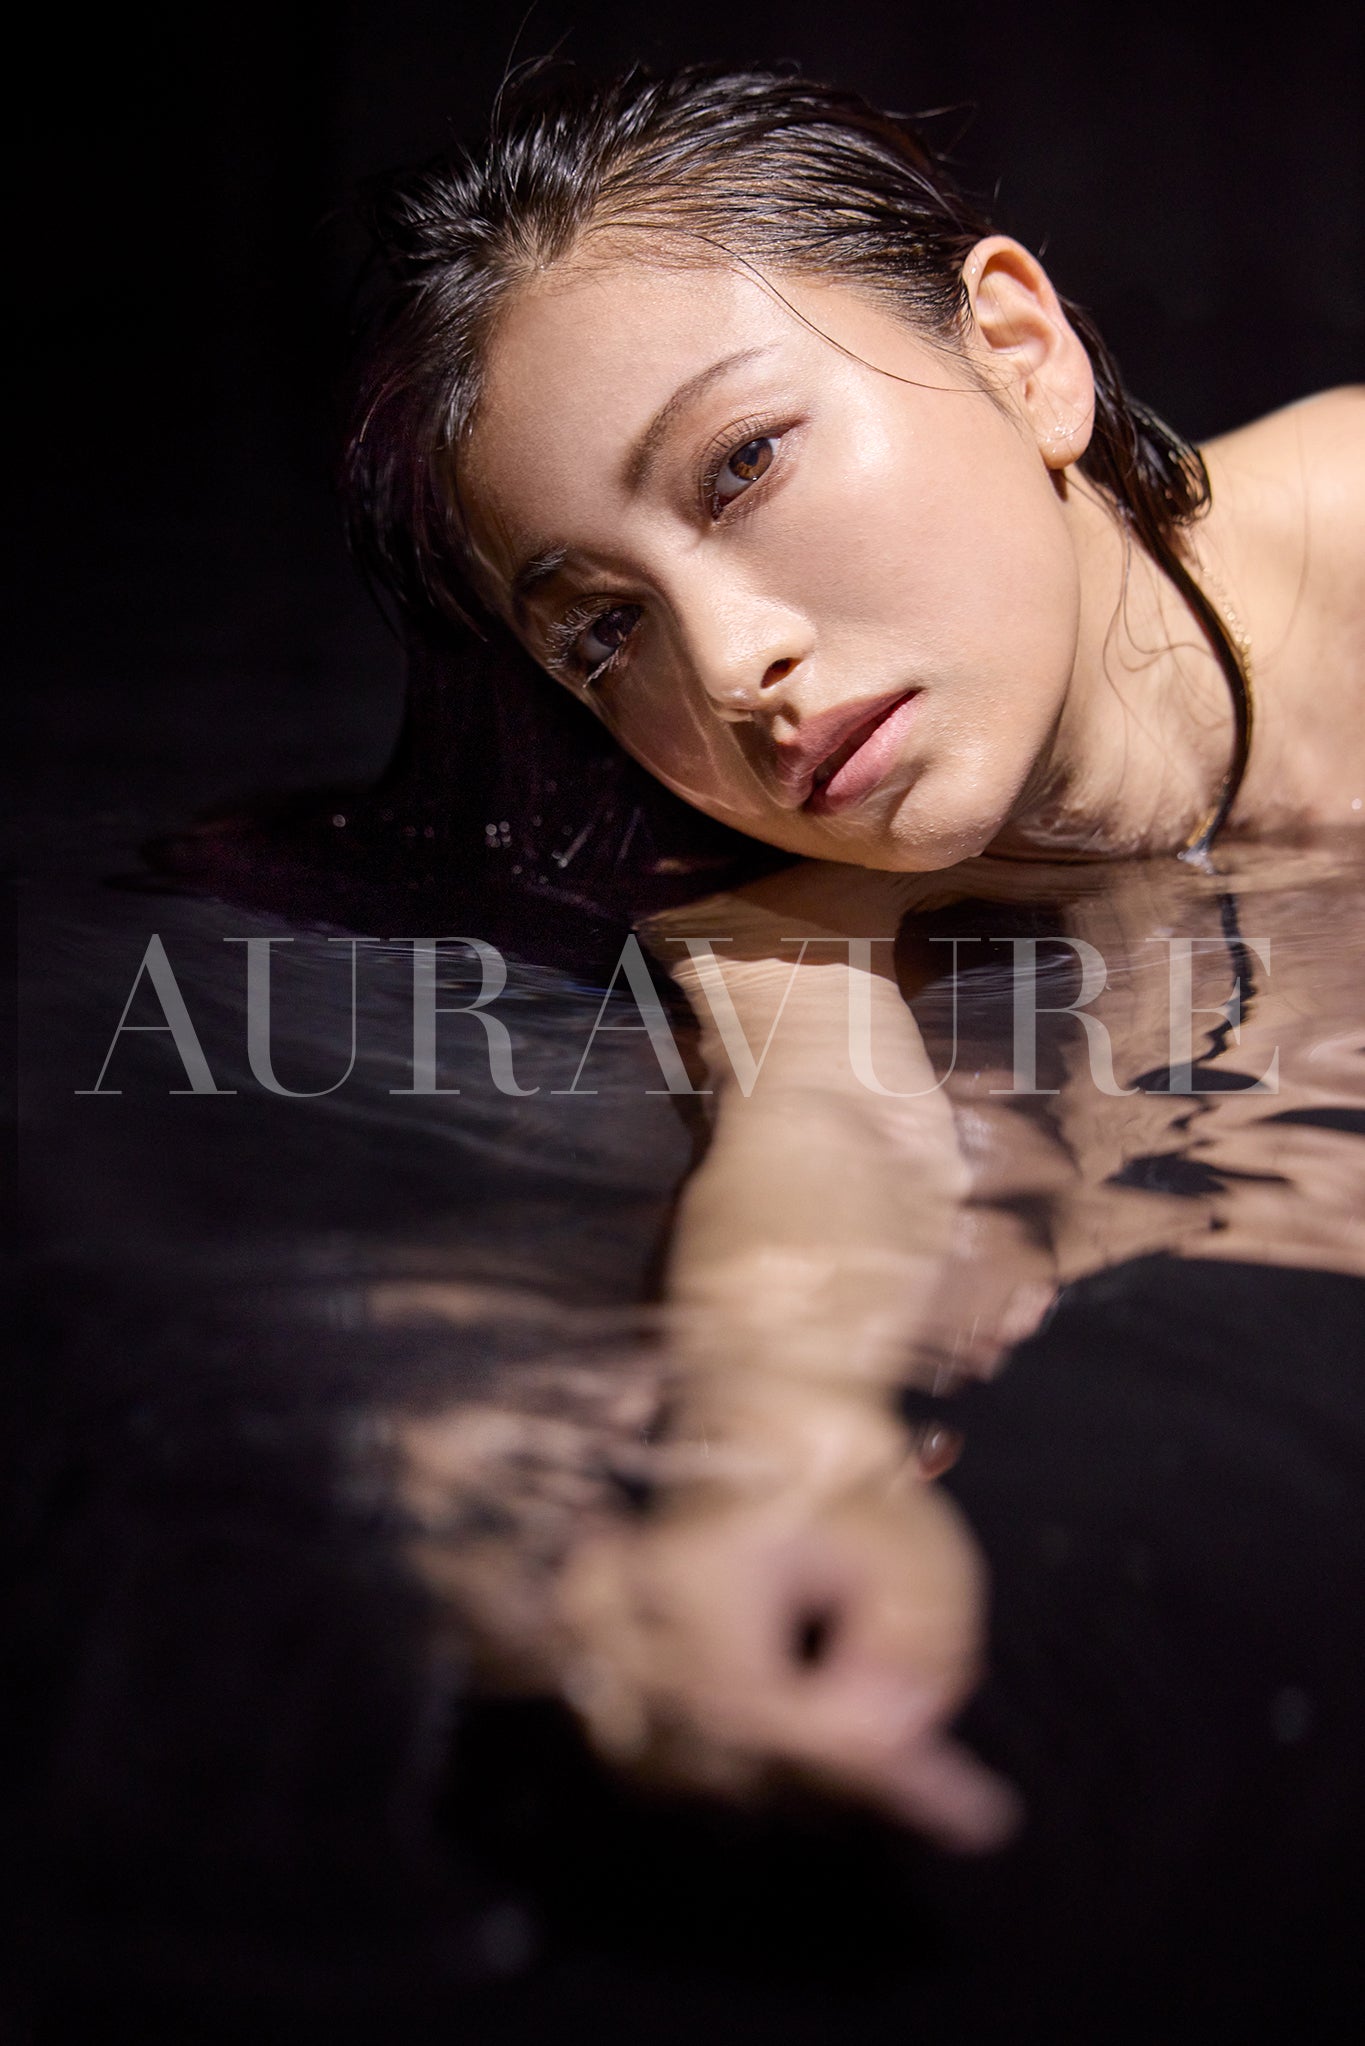 Auravure Magazine #2, Edisi Lengkap! Koleksi foto digital dan video bonus dari #鈴木聖!